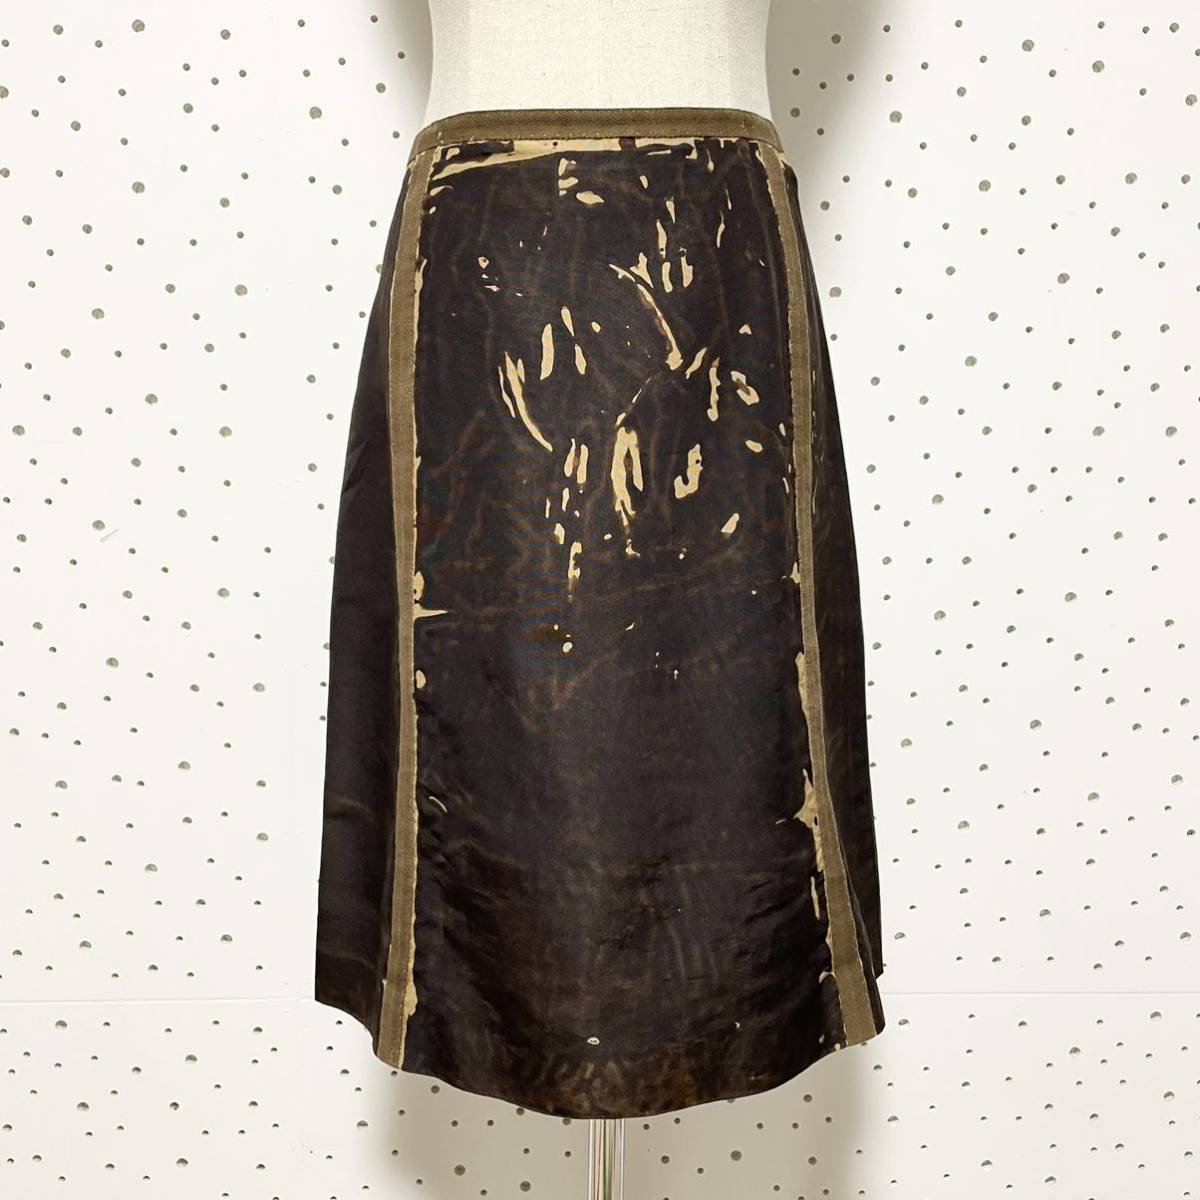 本物 コレクションモデル プラダ シルク100% ノーカラー 薄手 スカートスーツ ジャケット スカート セットアップ 38 ブラウン系 茶系  PRADA